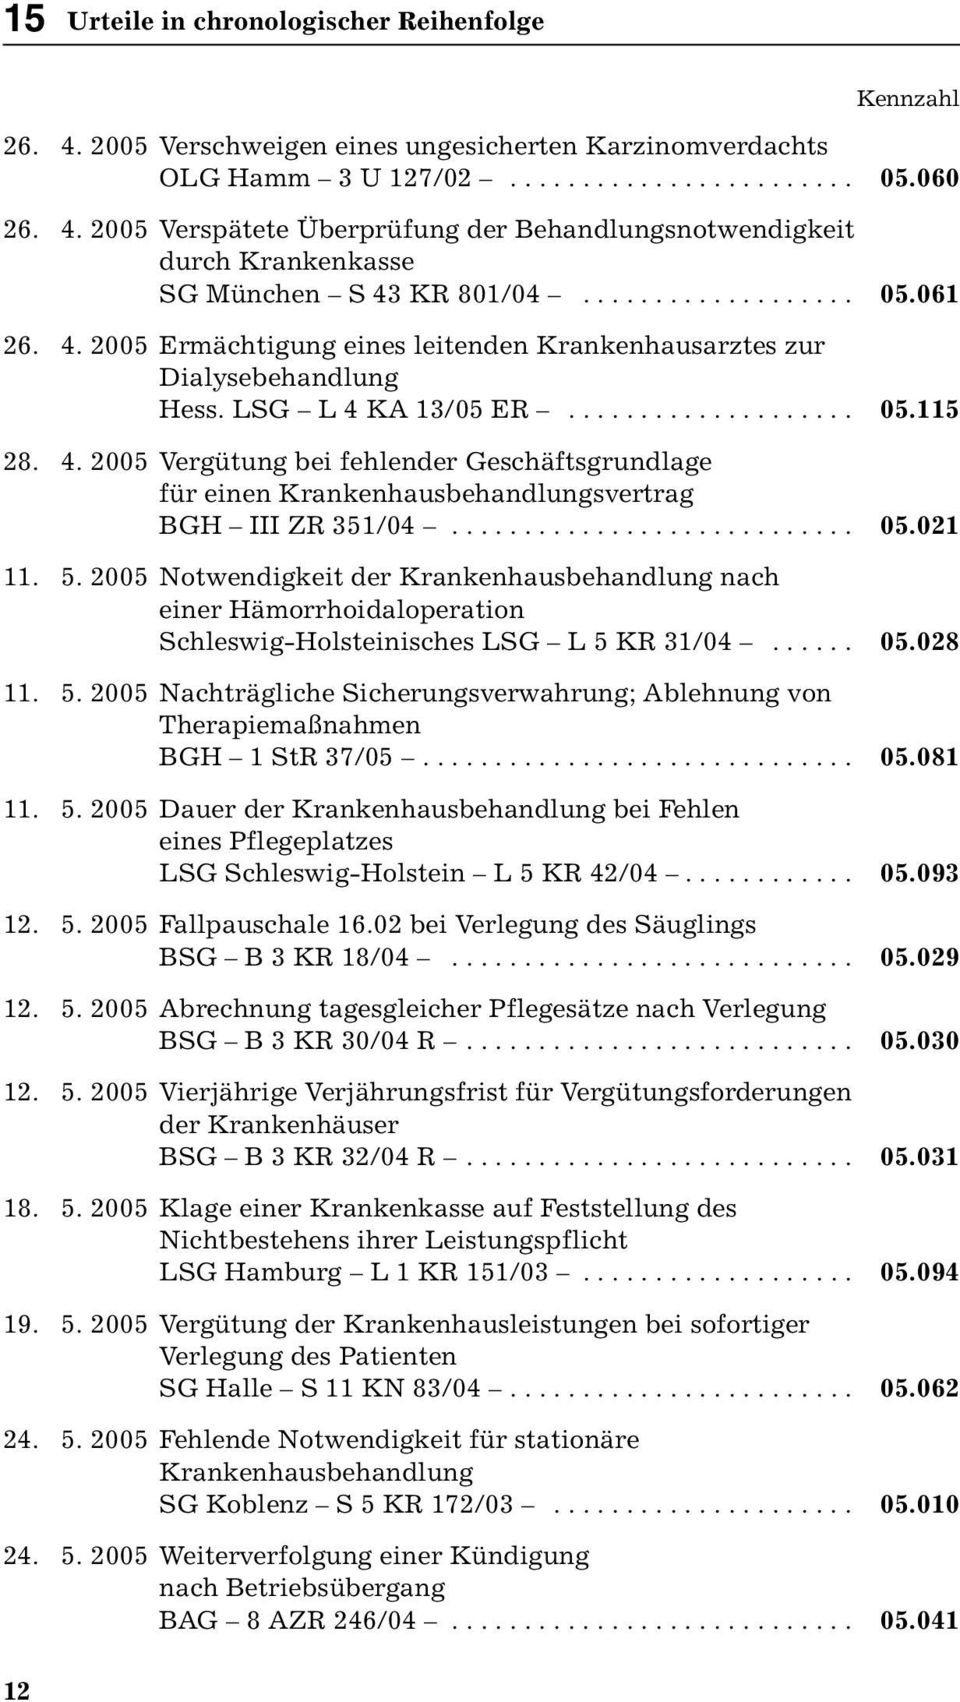 ........................... 05.021 11. 5. 2005 Notwendigkeit der Krankenhausbehandlung nach einer Hämorrhoidaloperation Schleswig-Holsteinisches LSG L 5 KR 31/04...... 05.028 11. 5. 2005 Nachträgliche Sicherungsverwahrung; Ablehnung von Therapiemaßnahmen BGH 1 StR 37/05.